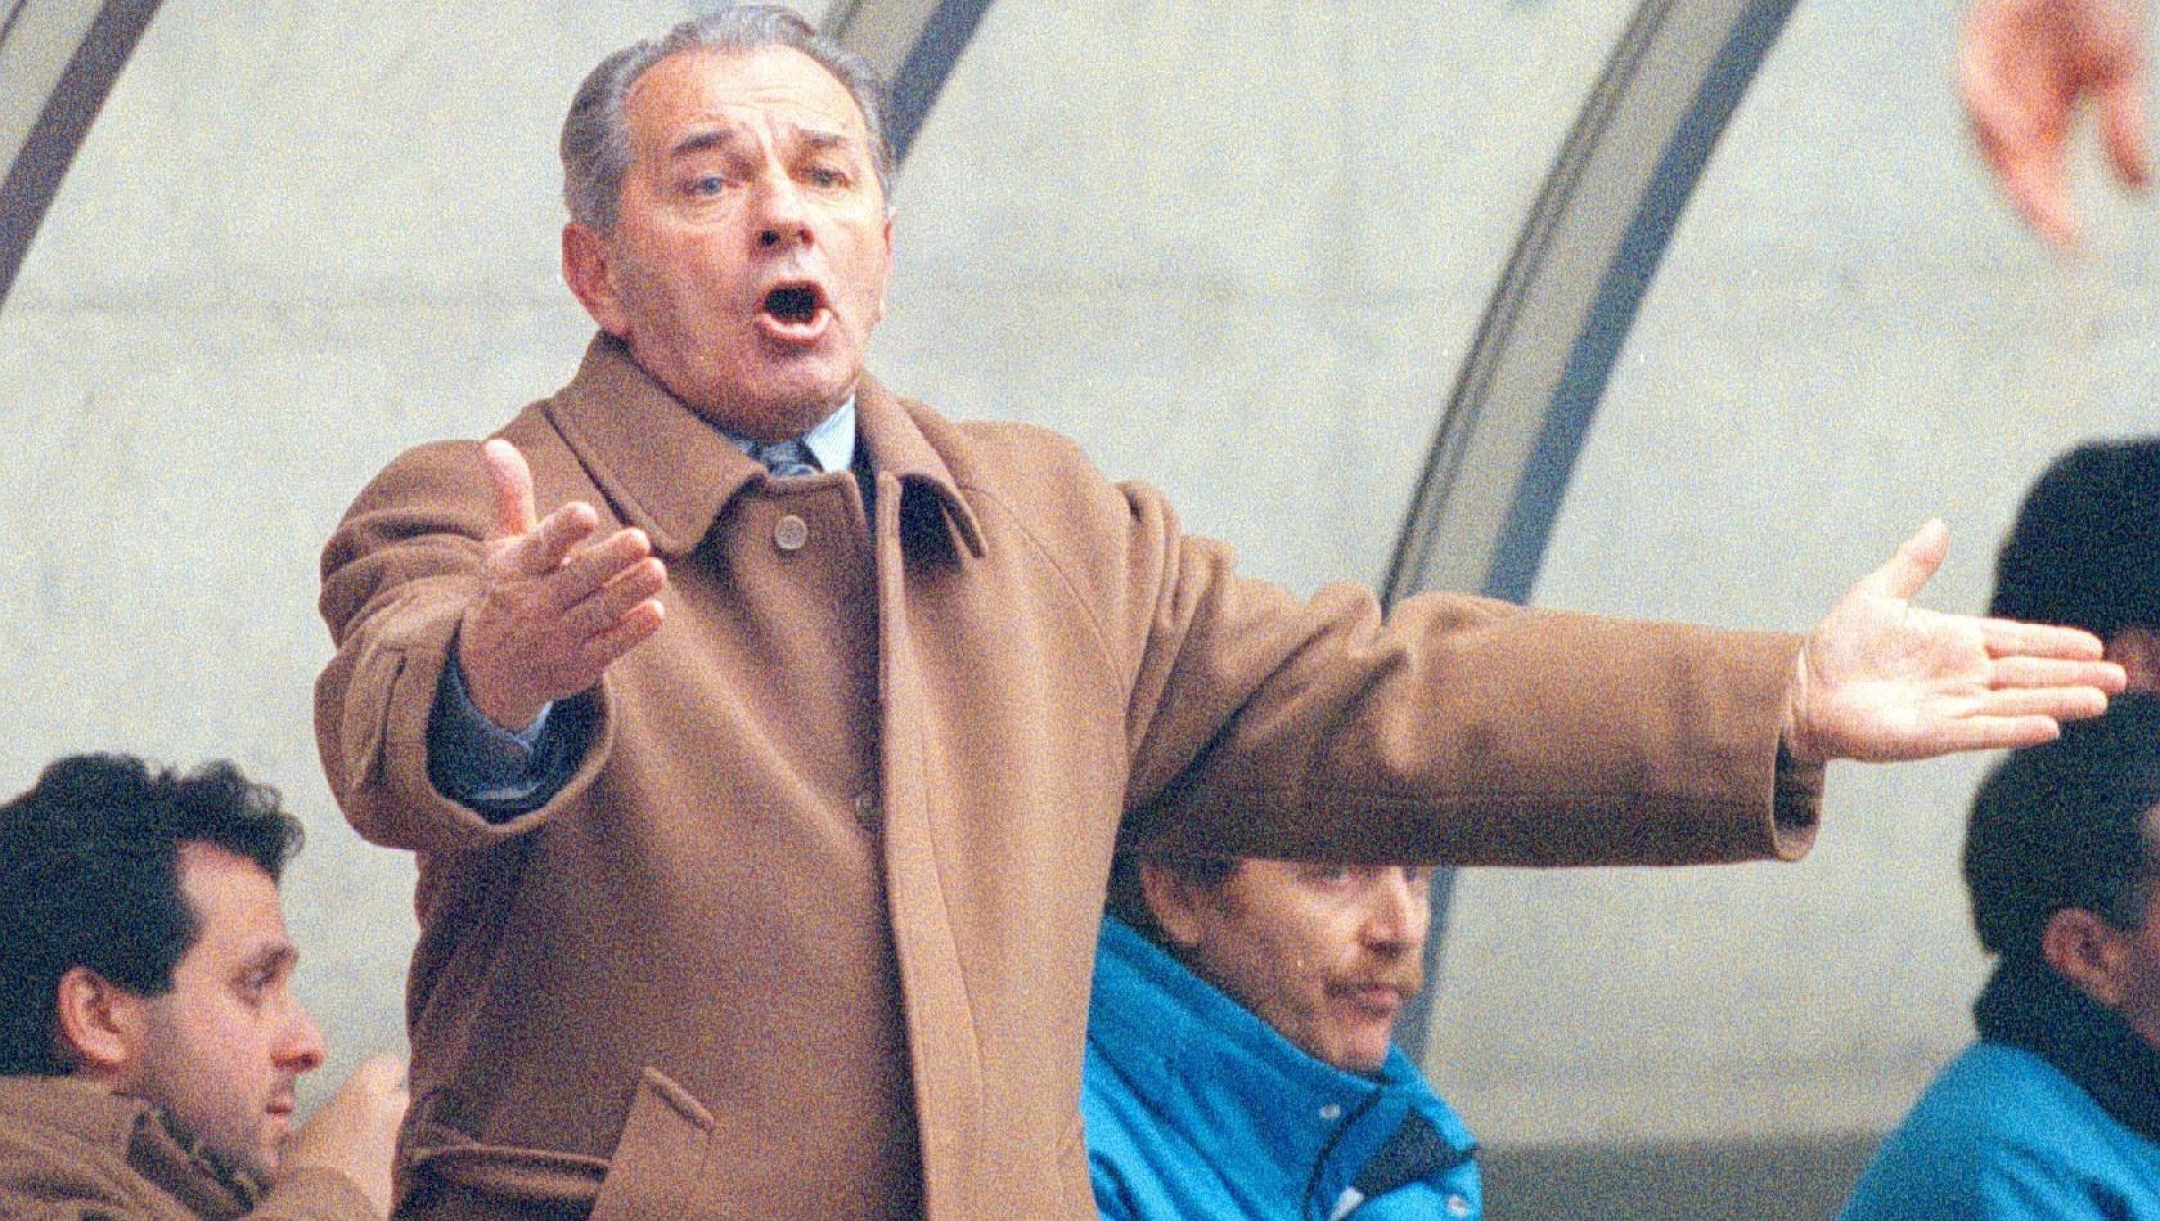 L'allenatore del Napoli, Vujadin Boskov, all'epoca allenatore del Napoli, durante la partita contro l'Inter in una immagine in una foto d'archivio dell'11 febbraio 1996 a Milano.